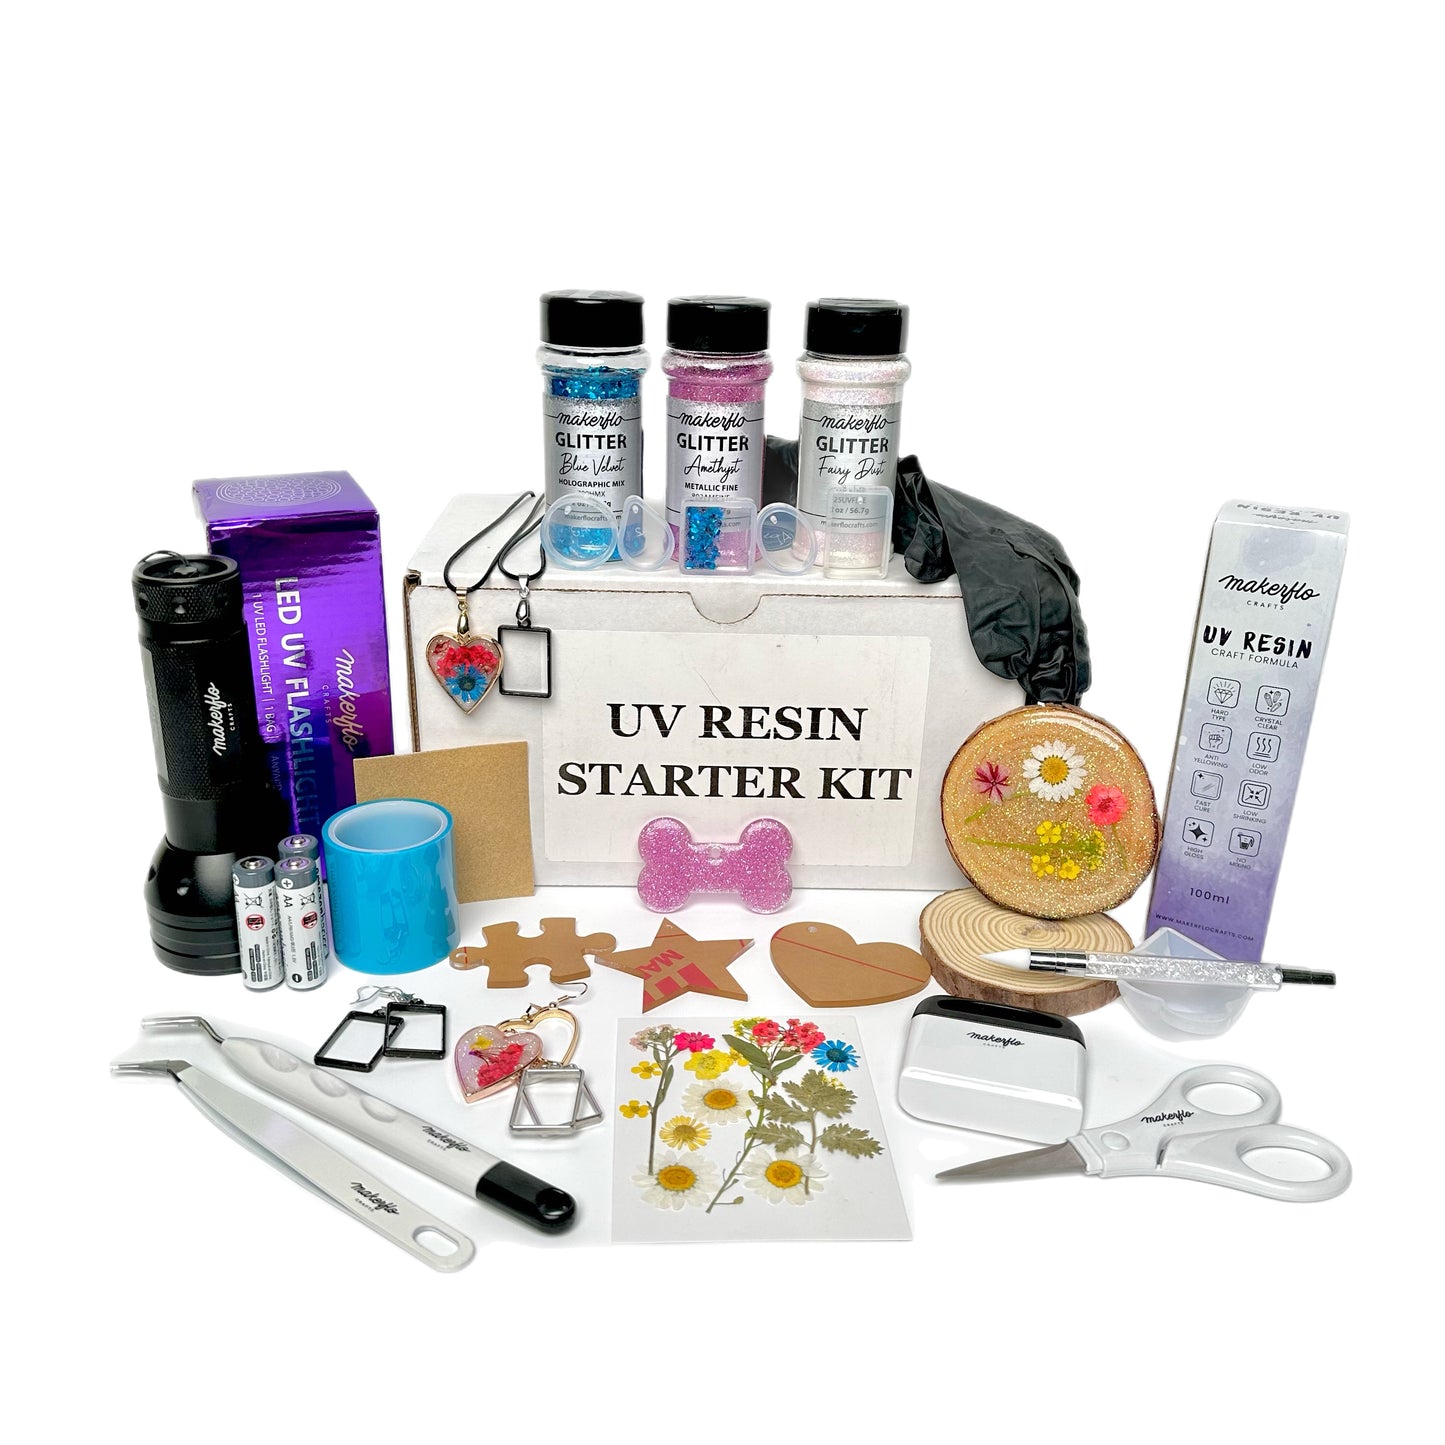 UV Resin Starter Kit